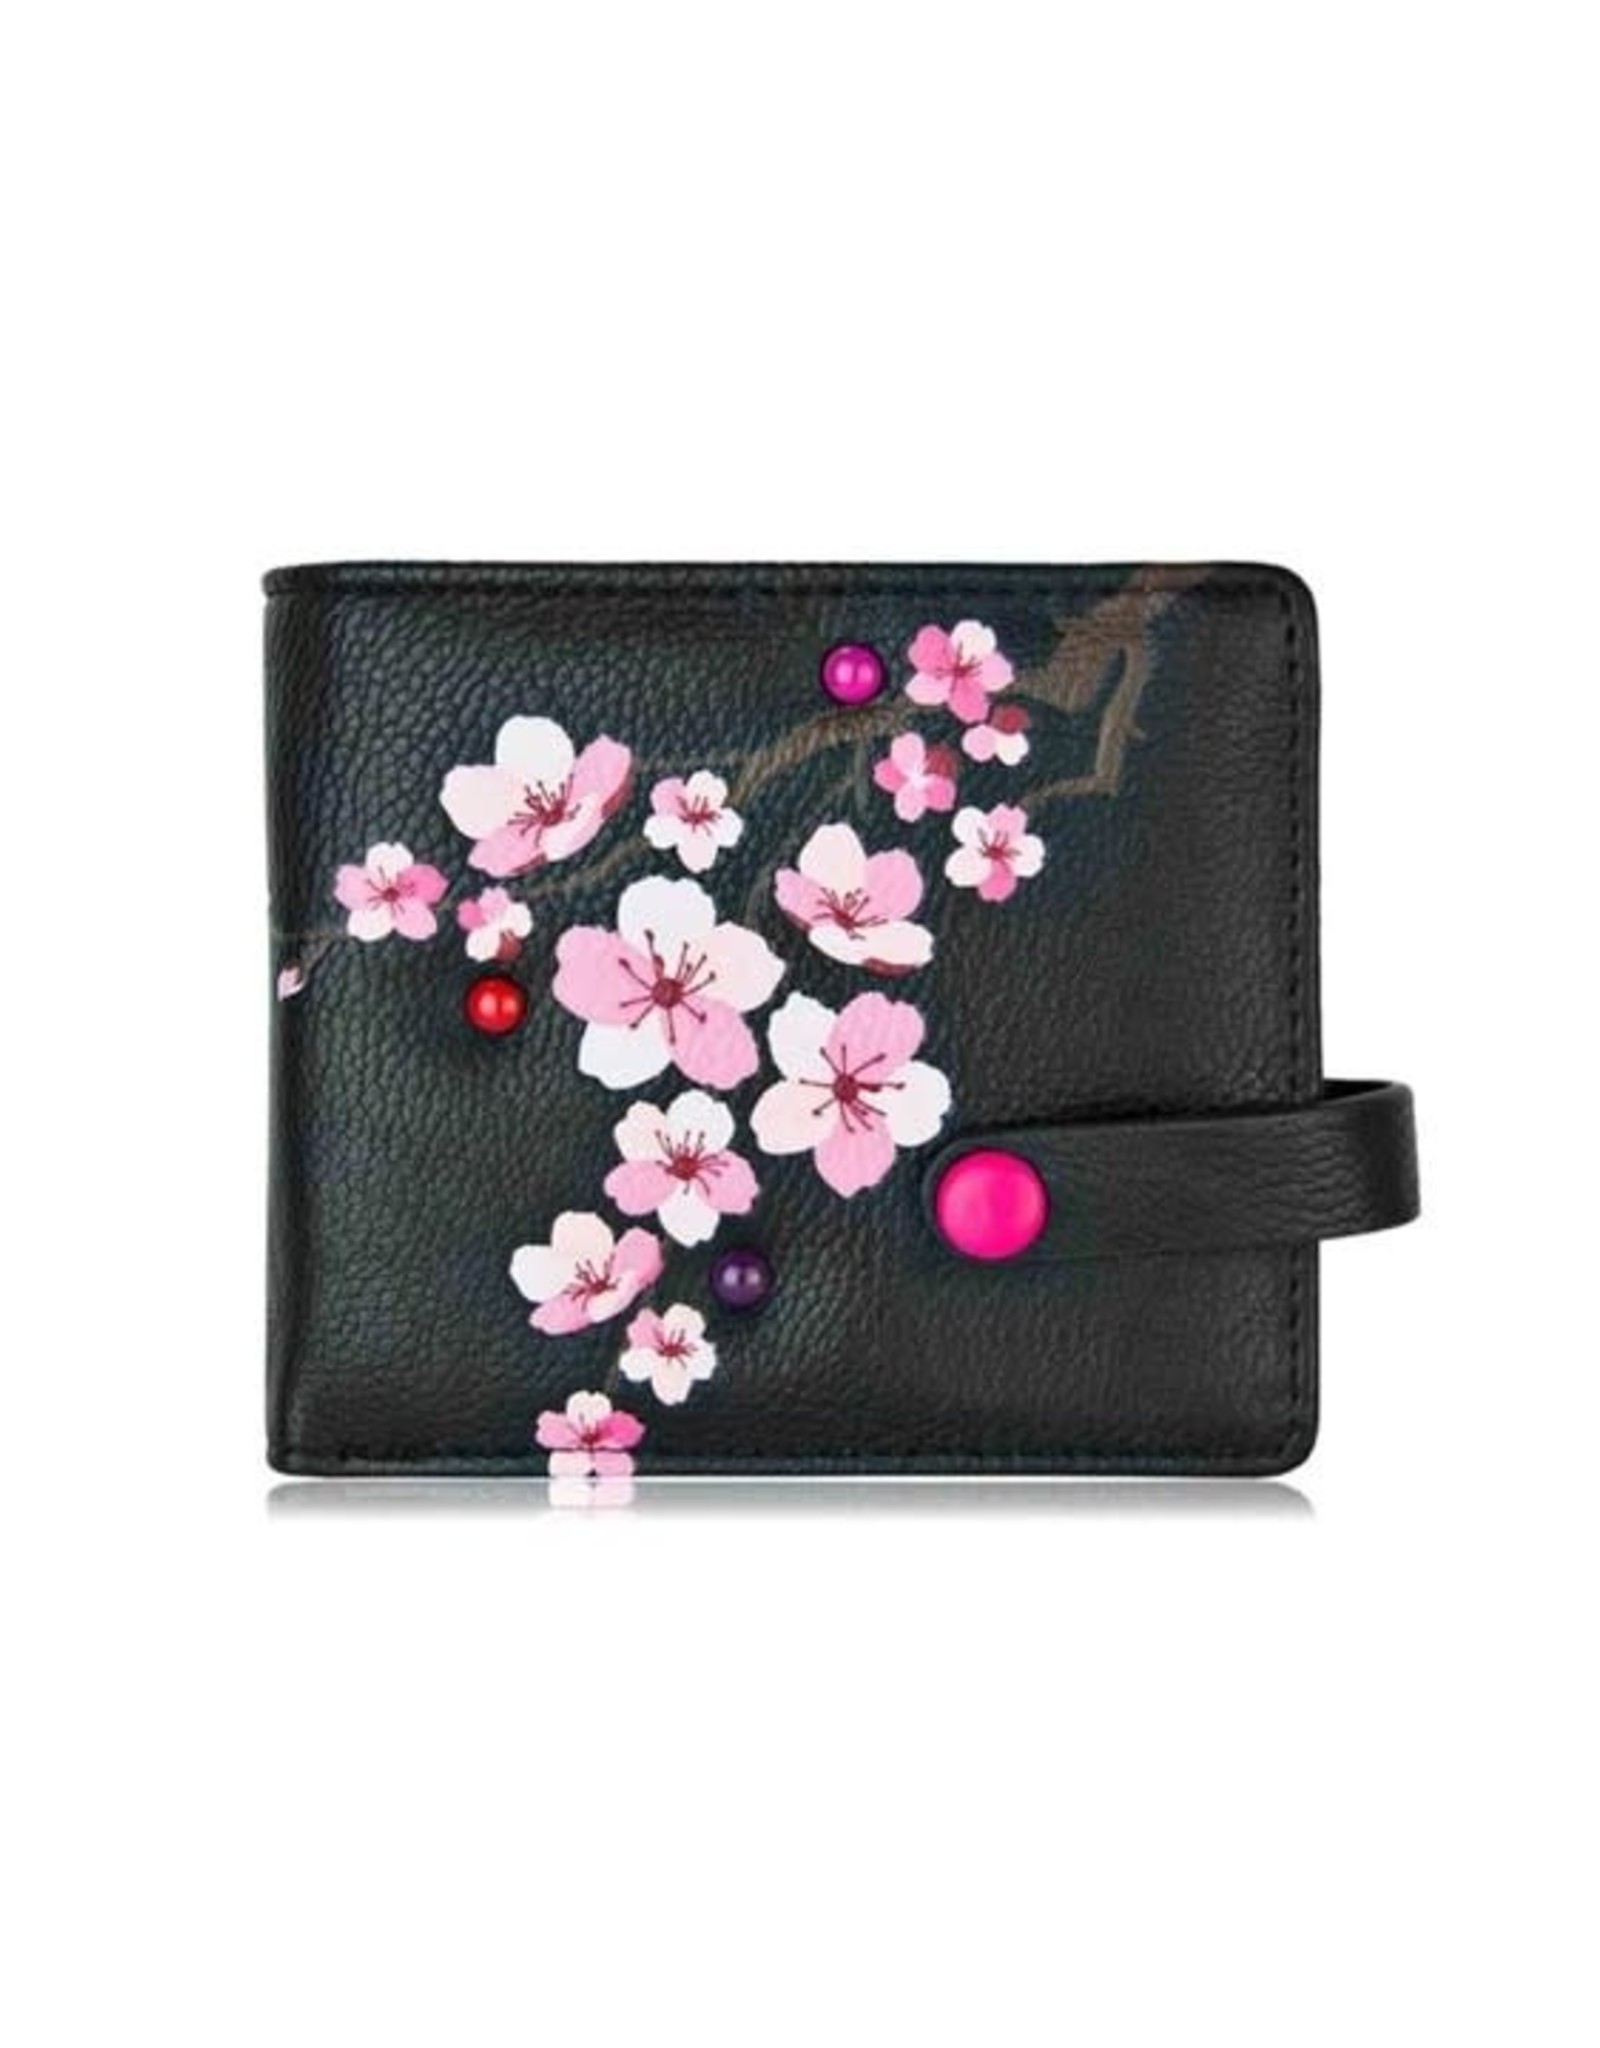 ESPE Petit portefeuille Blossom - Noir